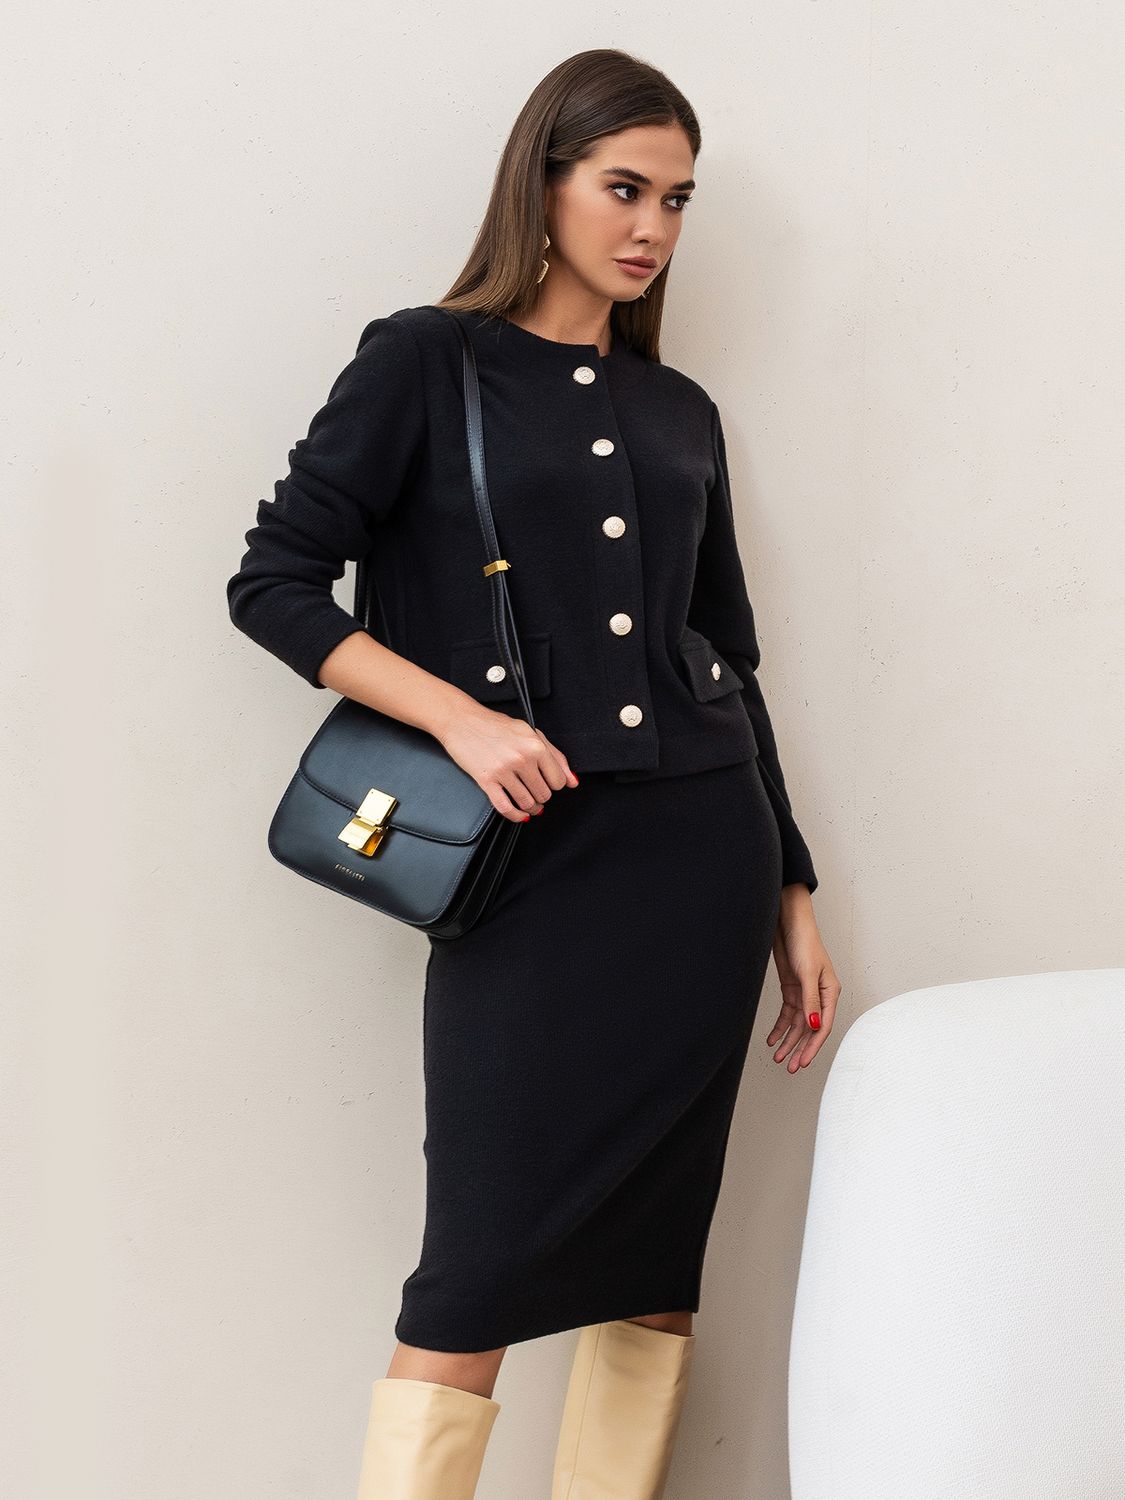 Женский костюм с юбкой в деловом стиле черного цвета - фото